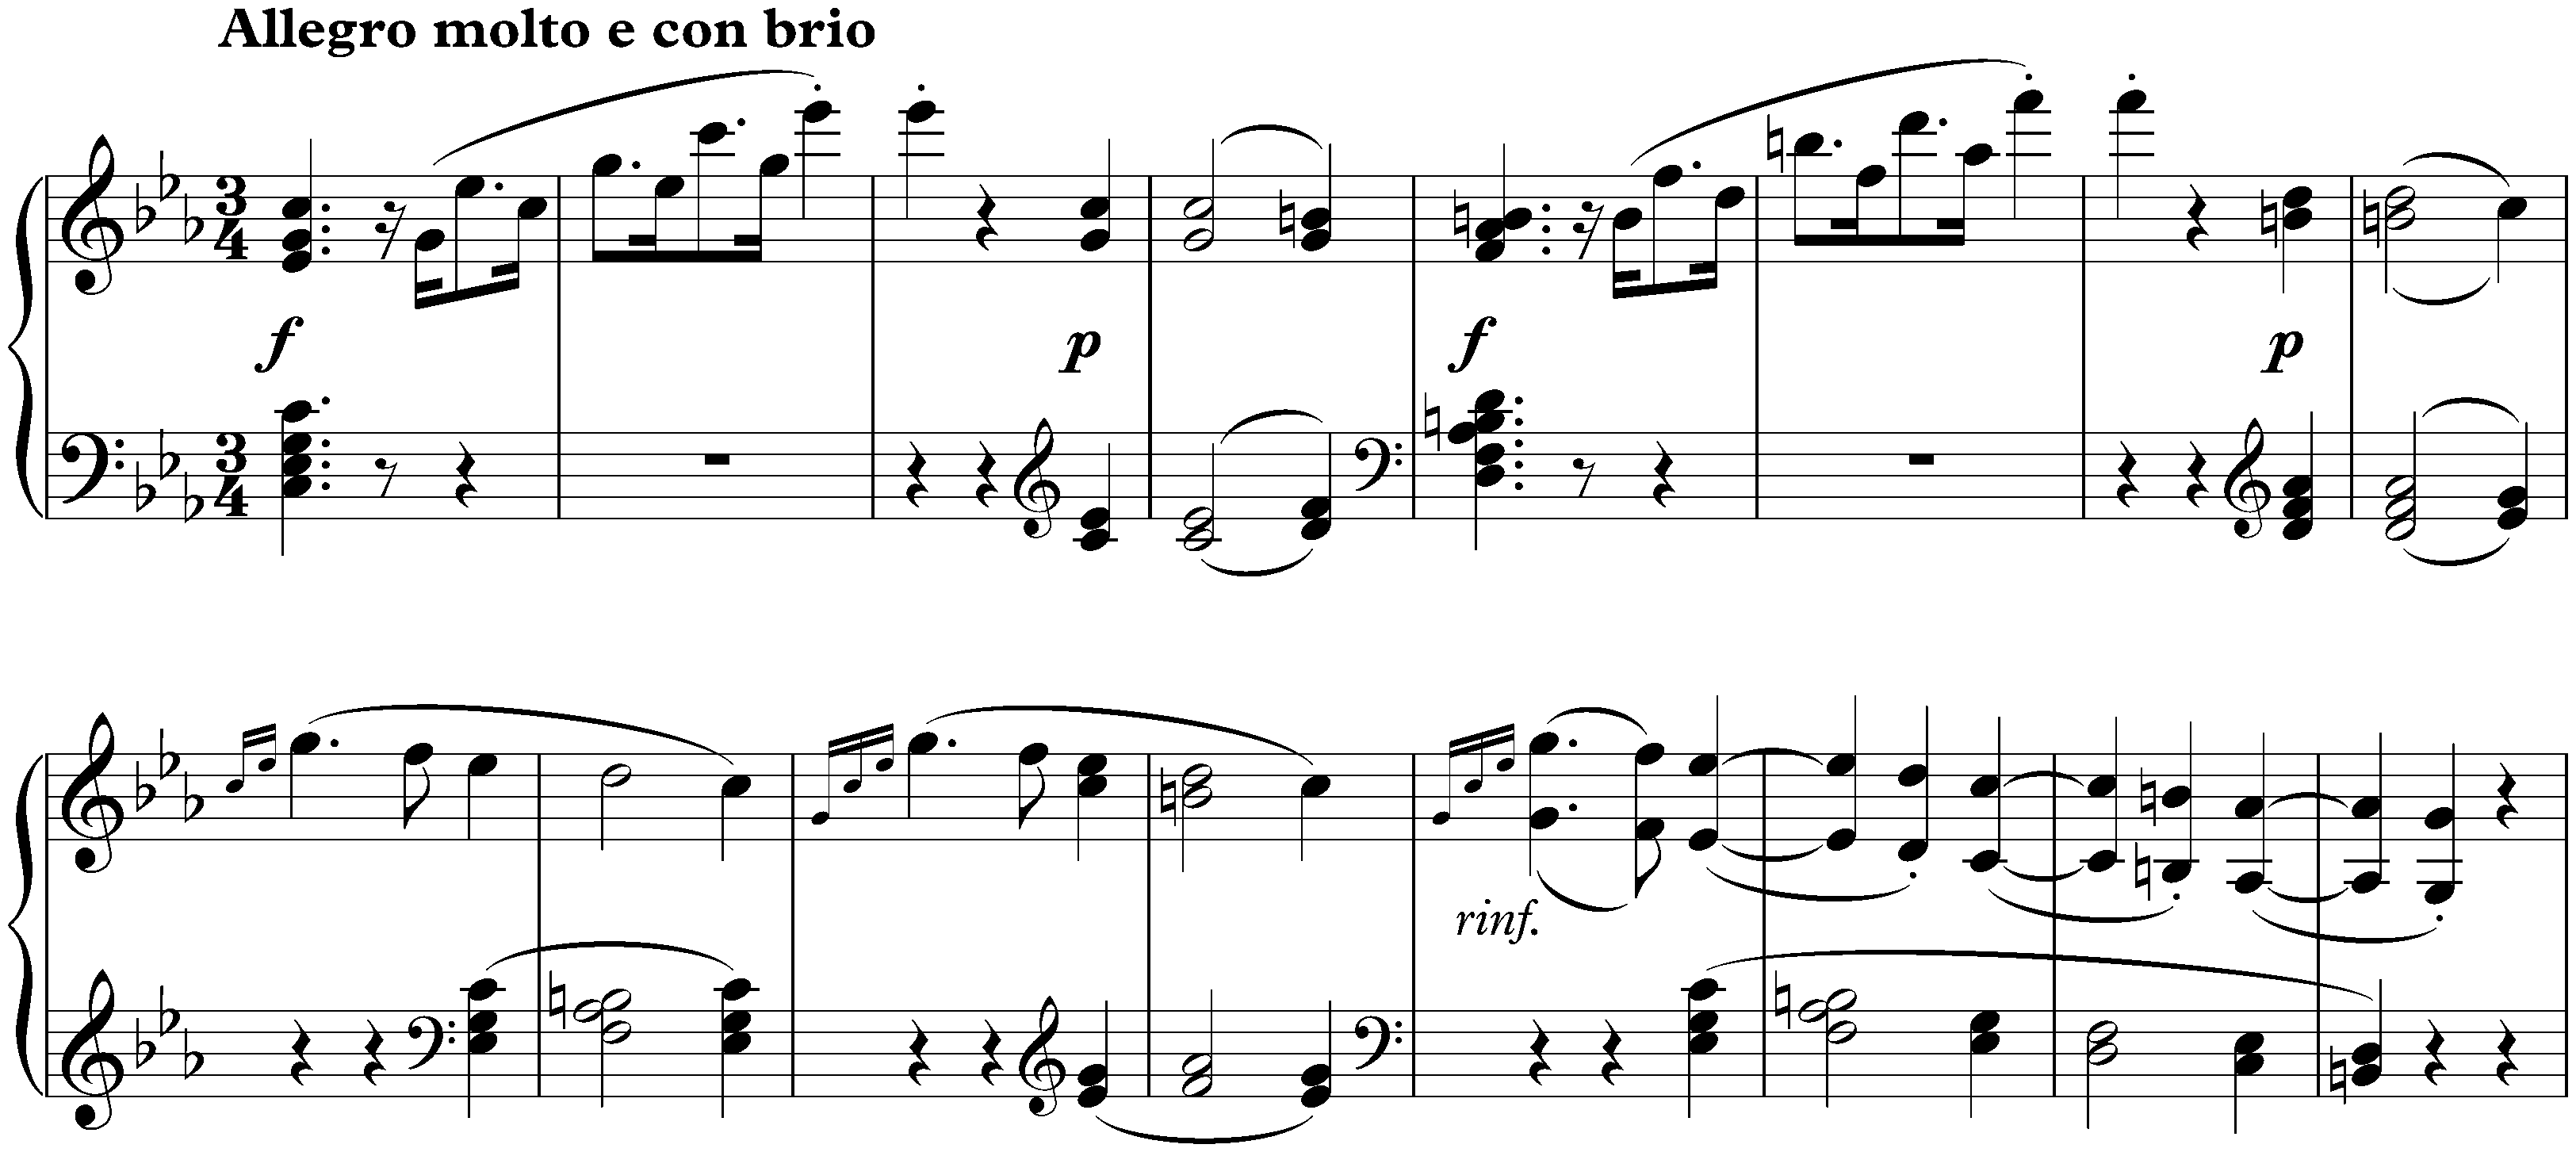 Sonata no. 5 in C minor, op. 10 no. 1; 1. Allegro molto e con brio